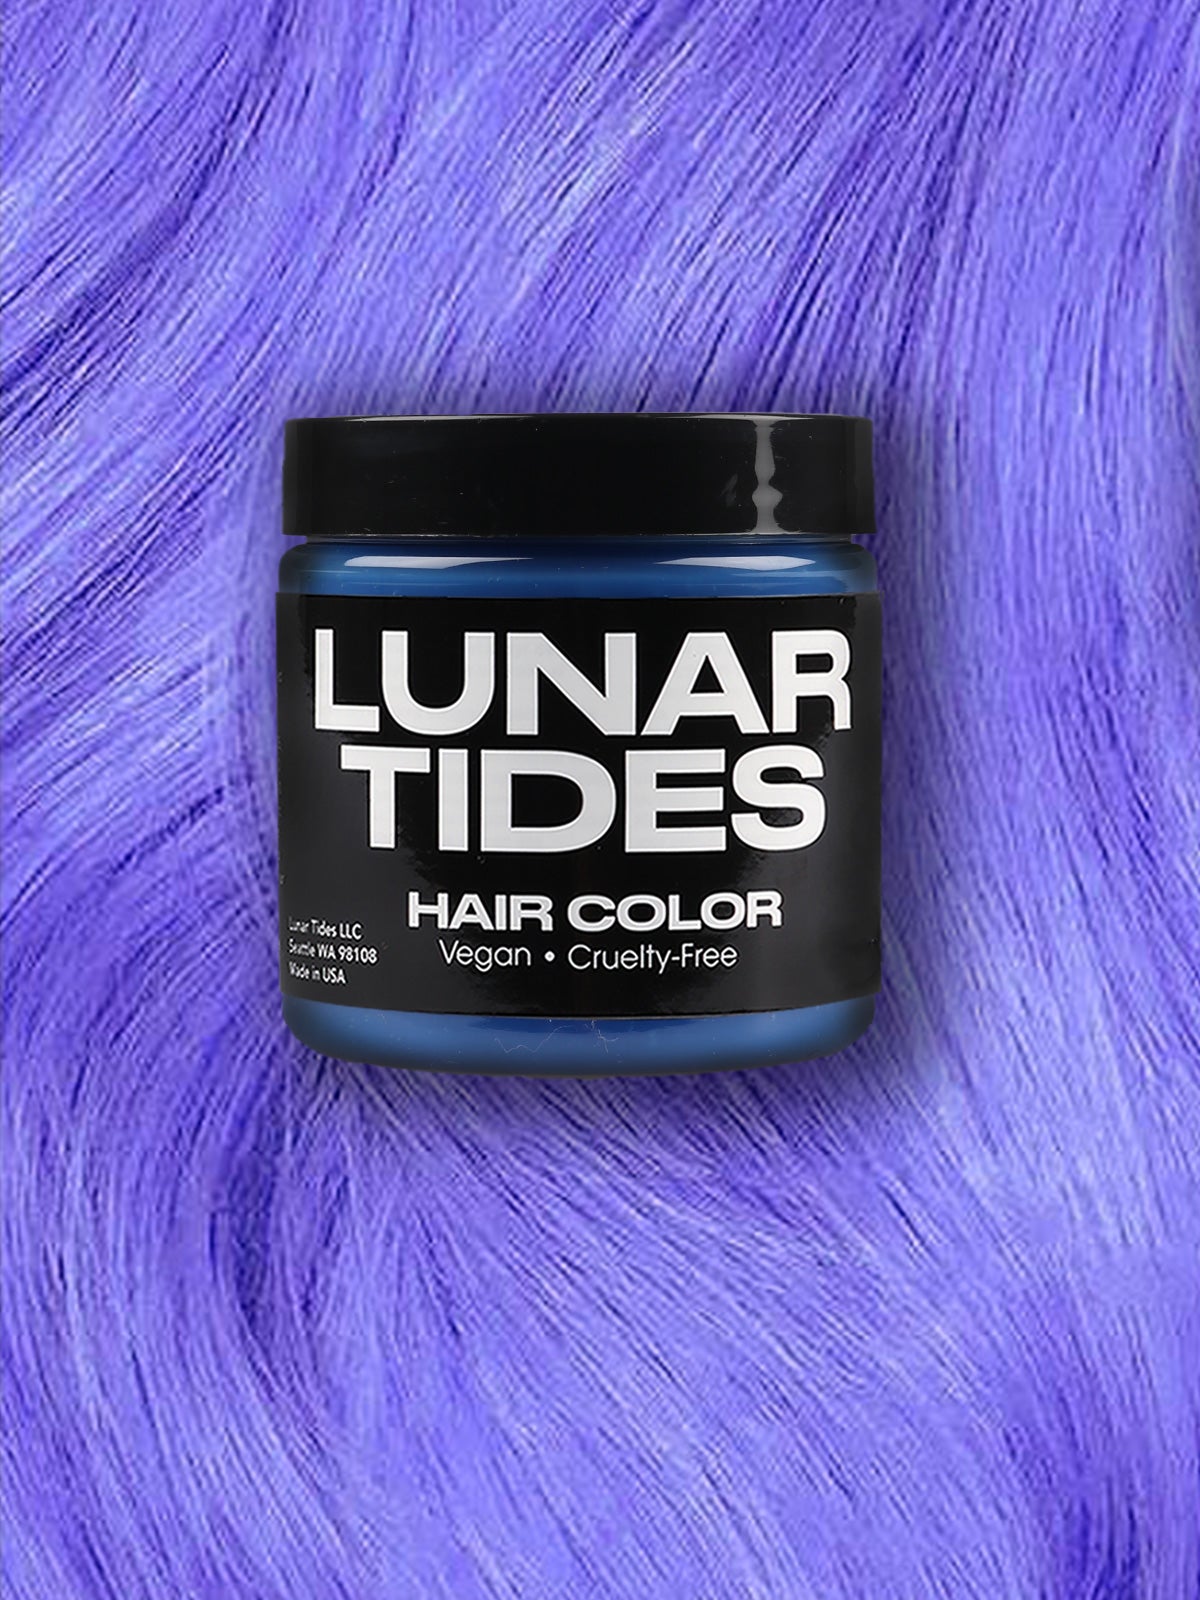 Lunar Tides Hair Dye - Petal Pink